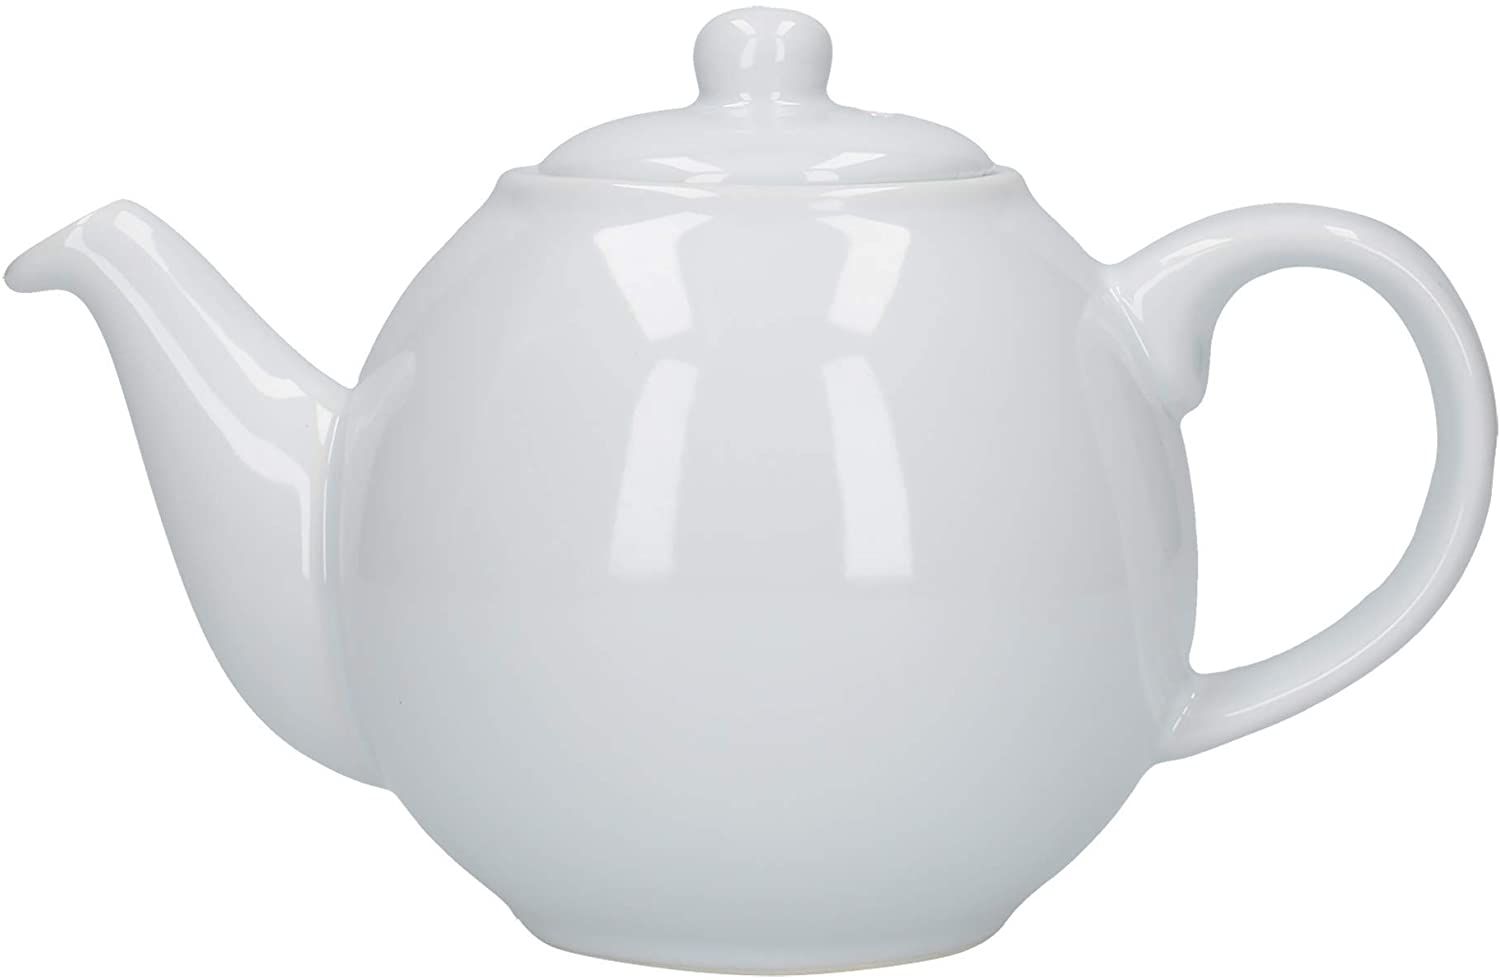 London Pottery 2 Cup Globe Teapot White